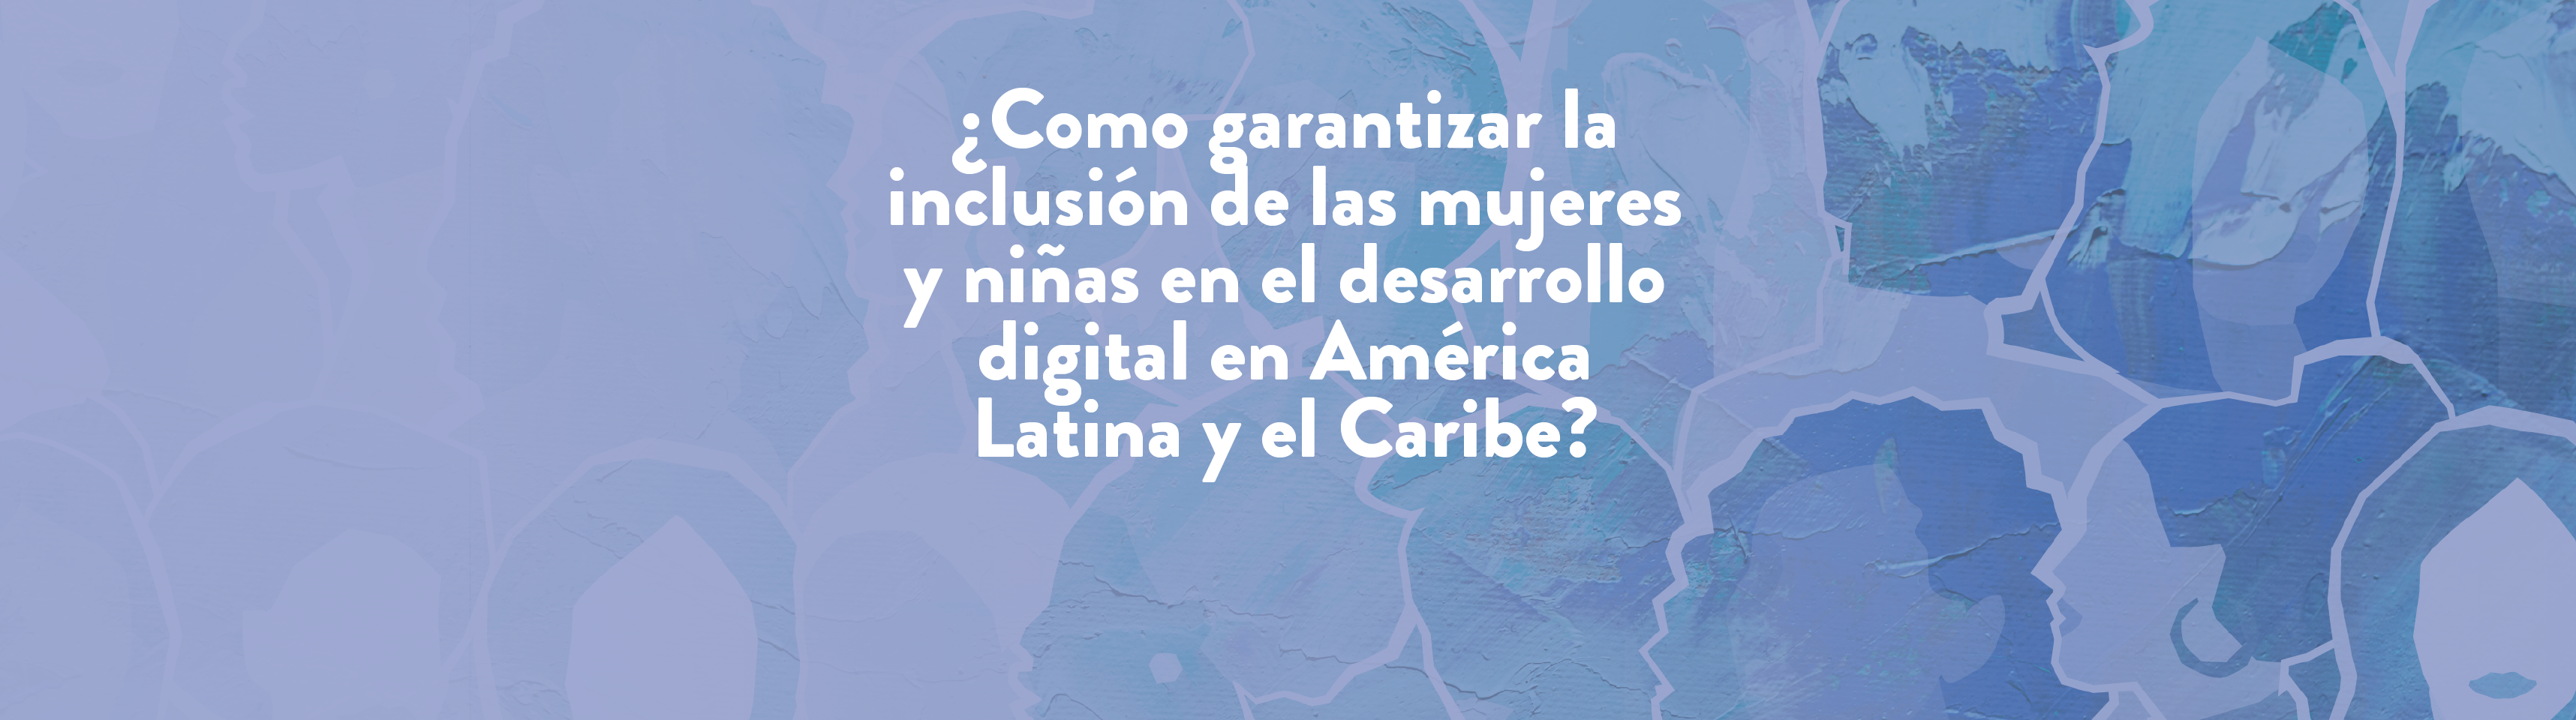 ¿Como garantizar la inclusión de las mujeres y niñas en el desarrollo digital en América Latina y el Caribe? 